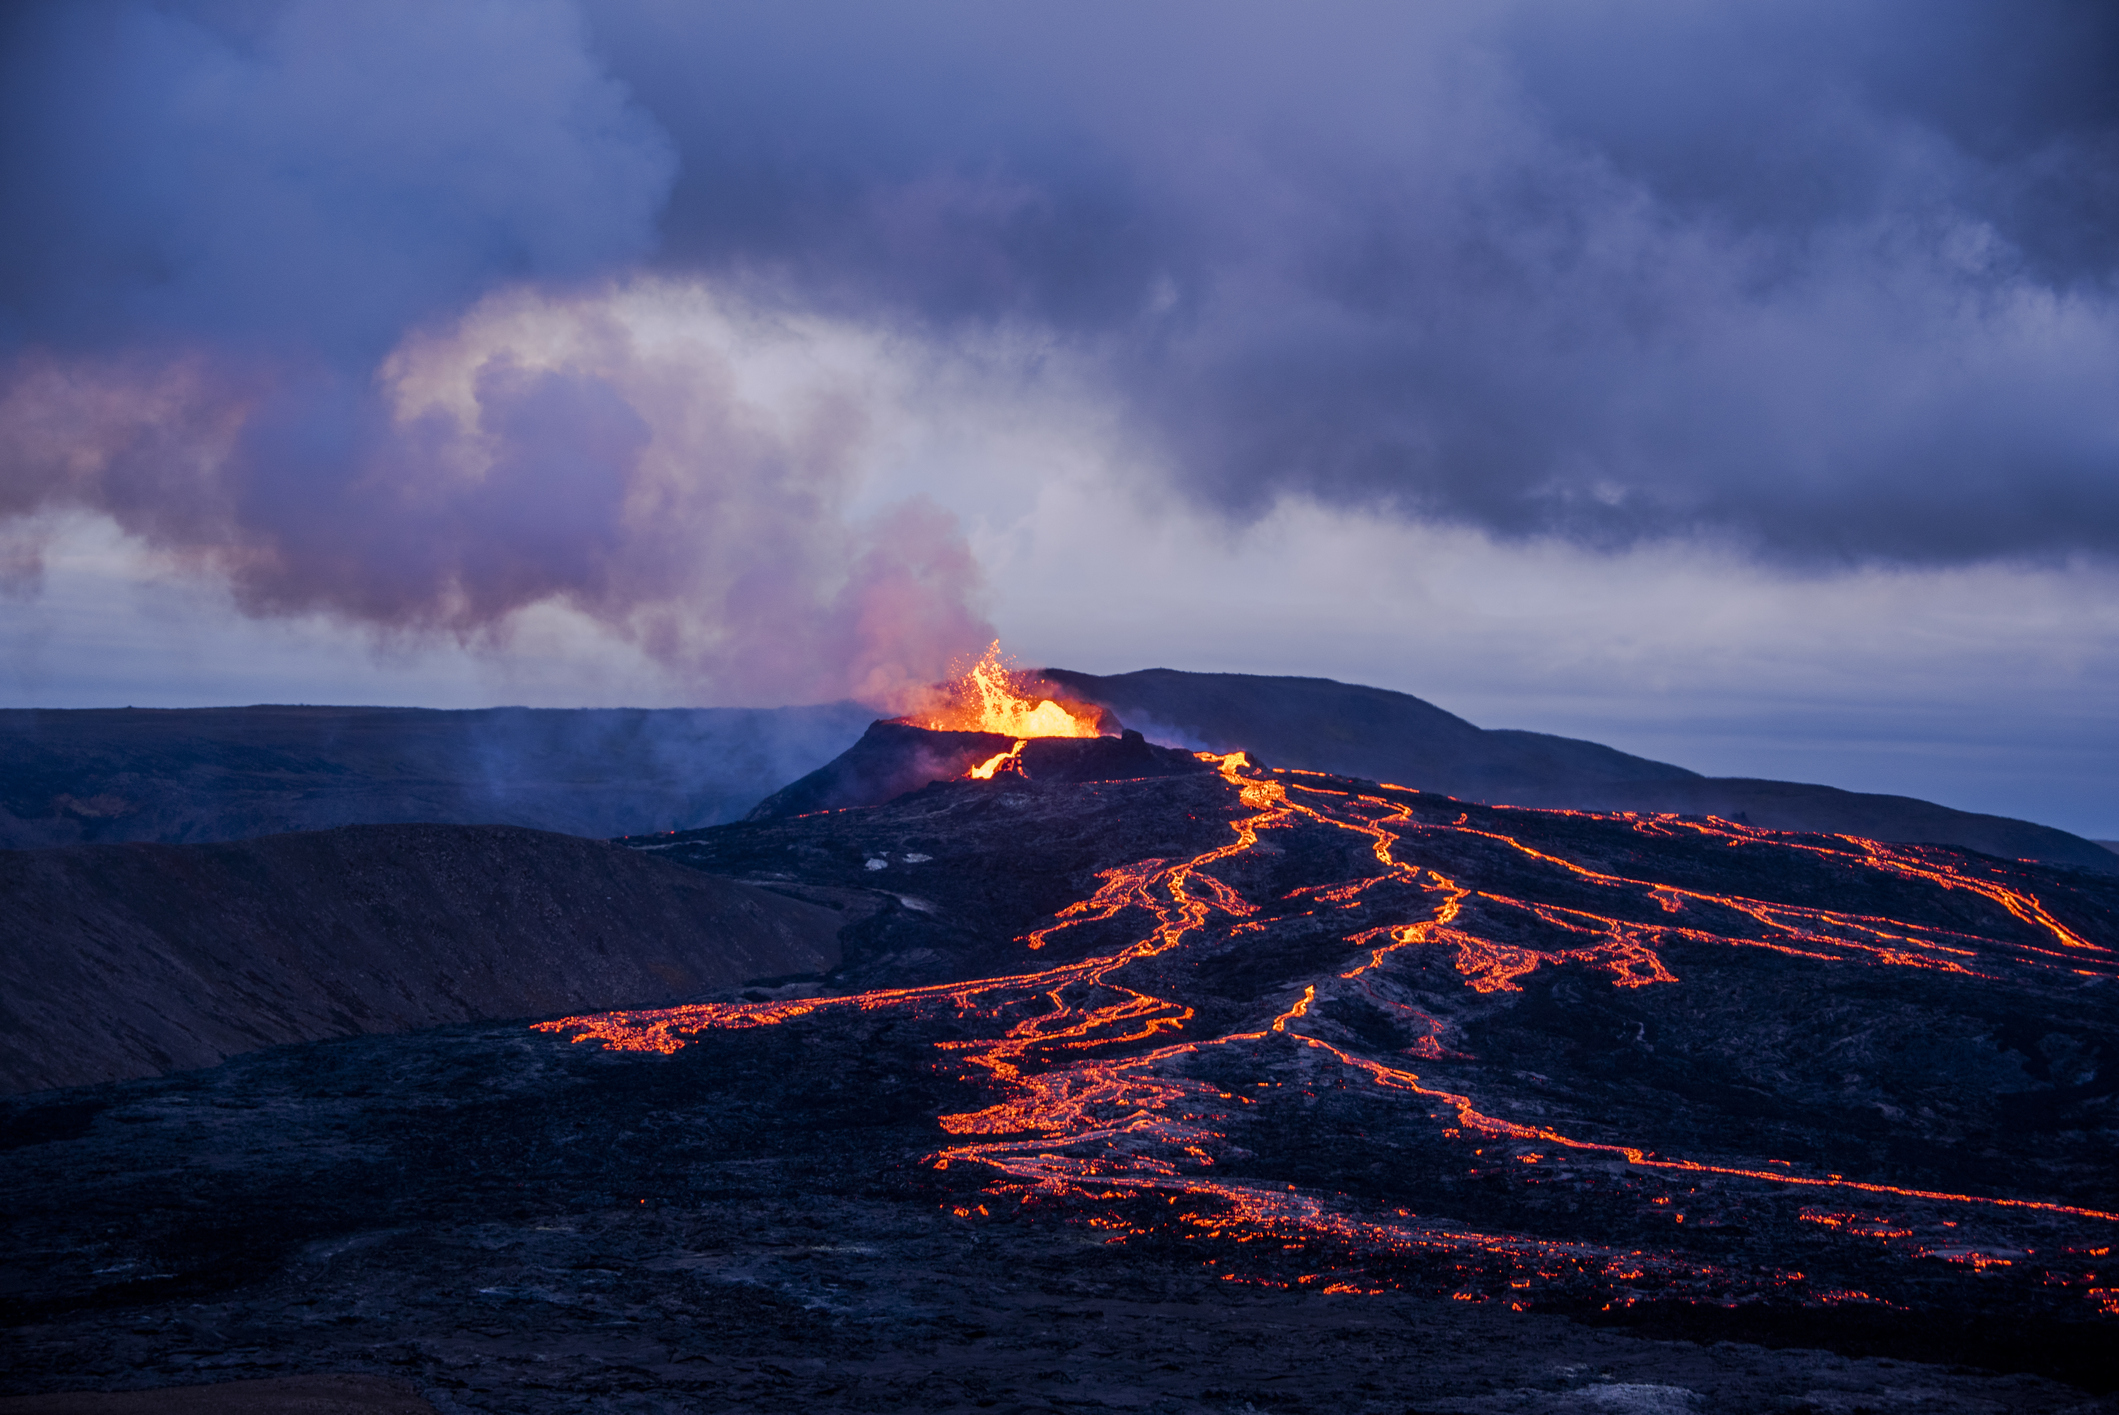 Lavastromen en de uitbarstende Eyjafjallajökull in de schemering.